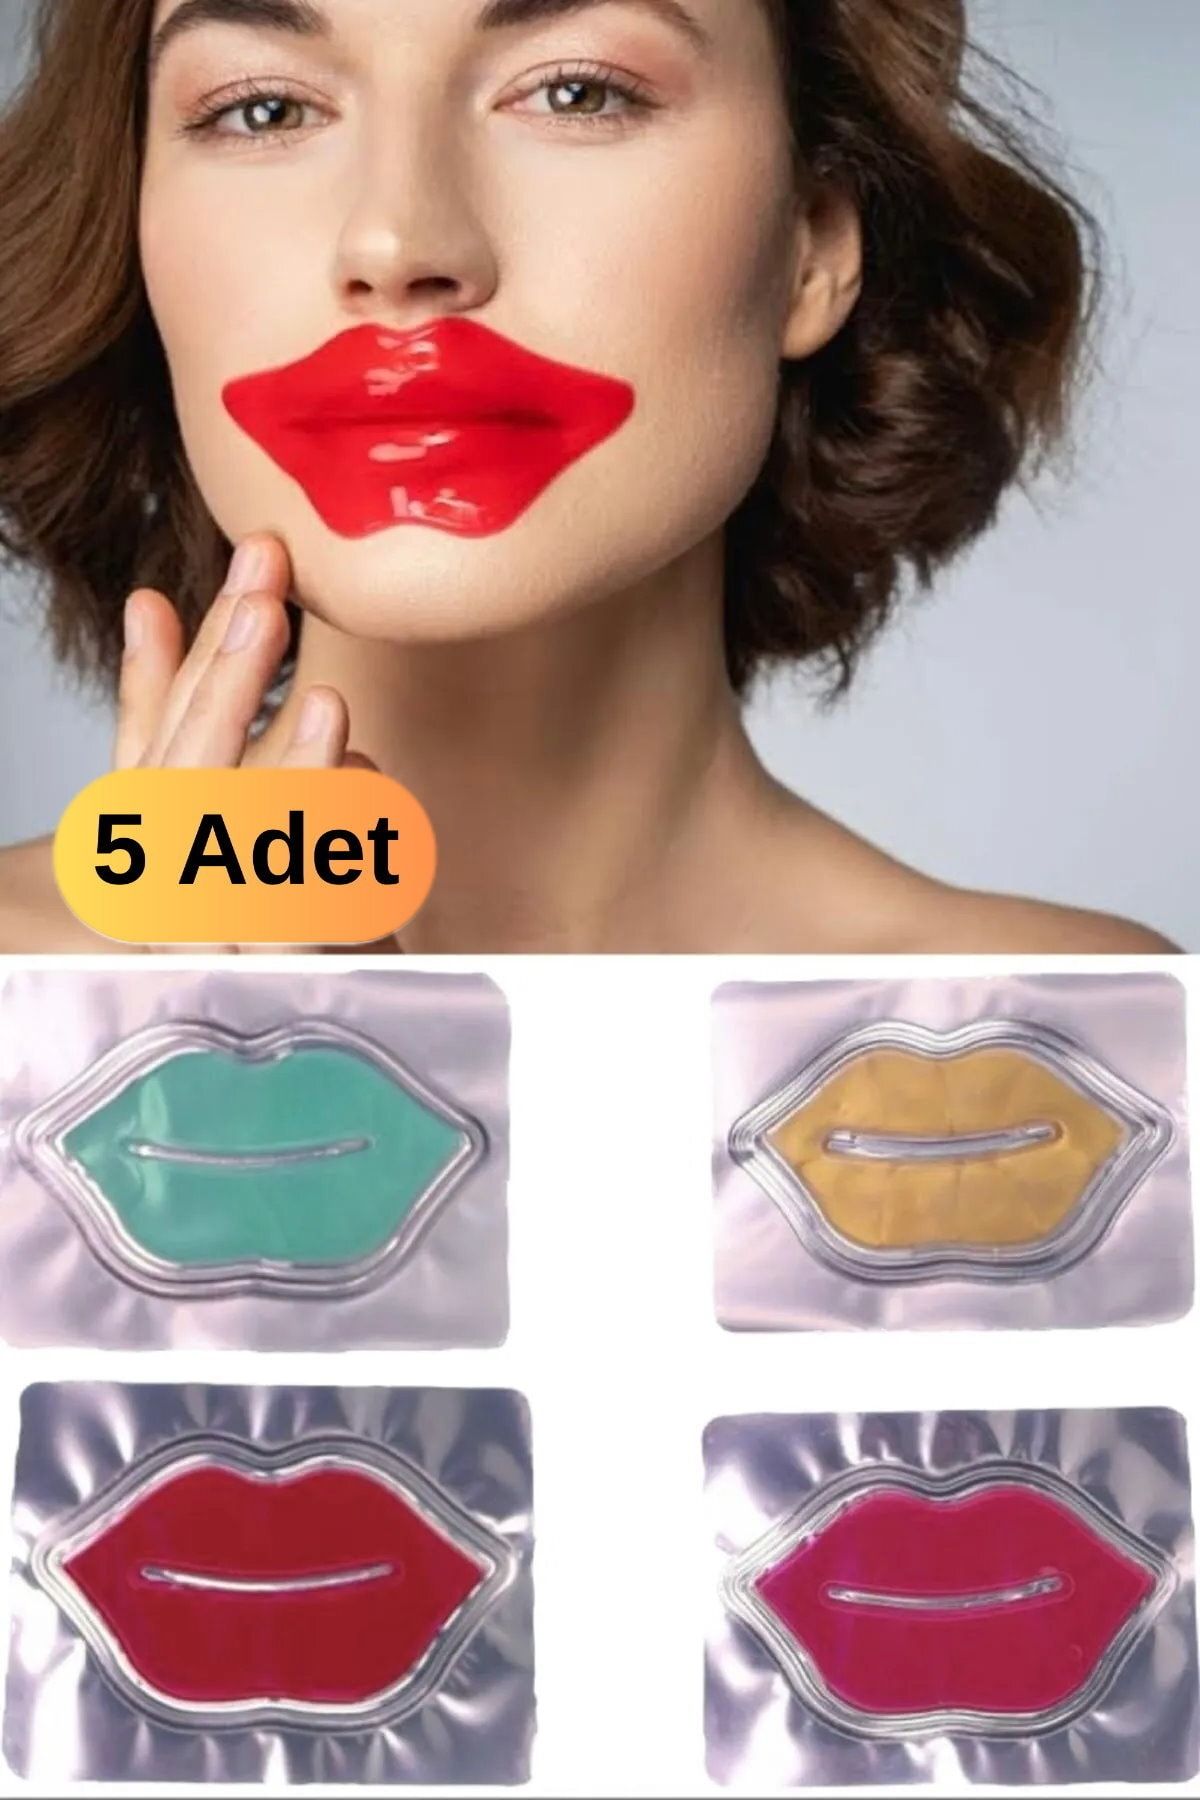 Utelips 5 Adet Yaşlanma Karşıtı Besleyici Hidrojen Içerikli Günlük Peeling 8gr Jel Maske Make Up Kadın Bakım